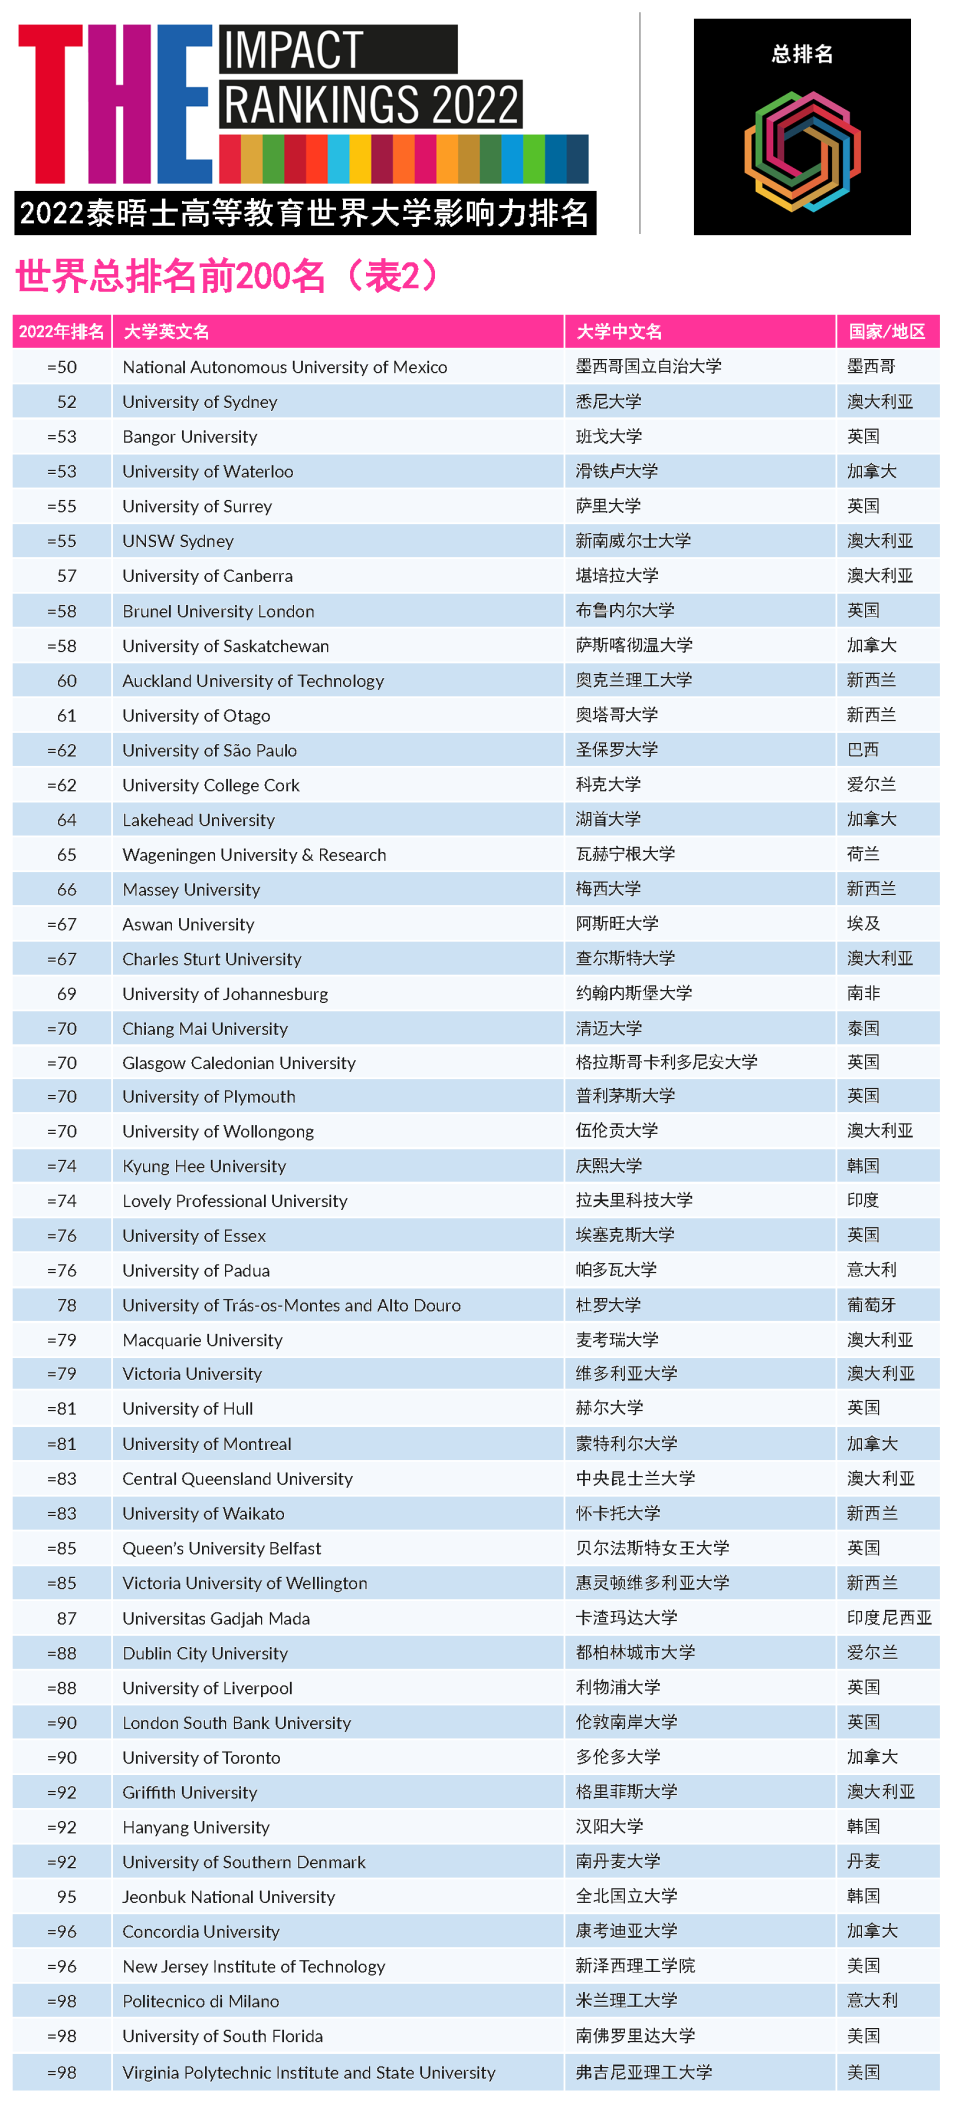 2022年泰晤士高等教育(TEH)世界大学影响力排名!